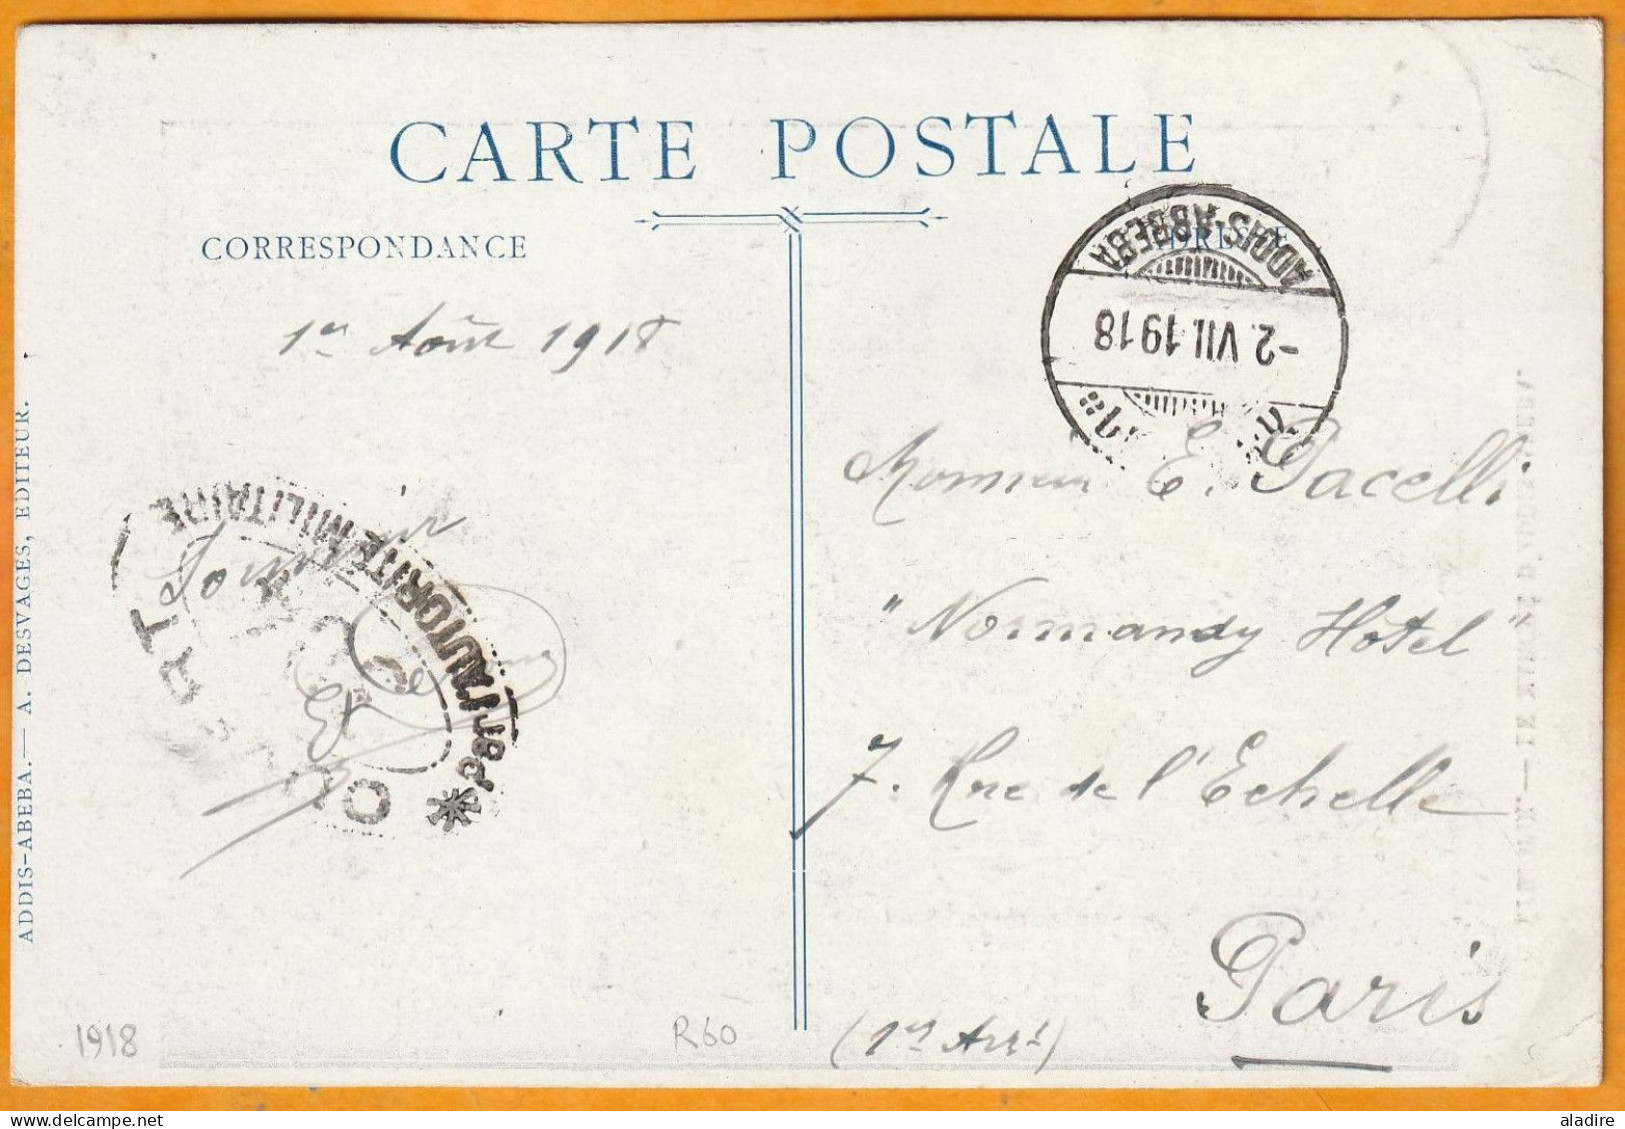 1918 - Carte Postale D'ADDIS ABBEBA, Ethiopie Vers PARIS, France - Timbre 1/2 Guerche Seul - Censure - Etiopía